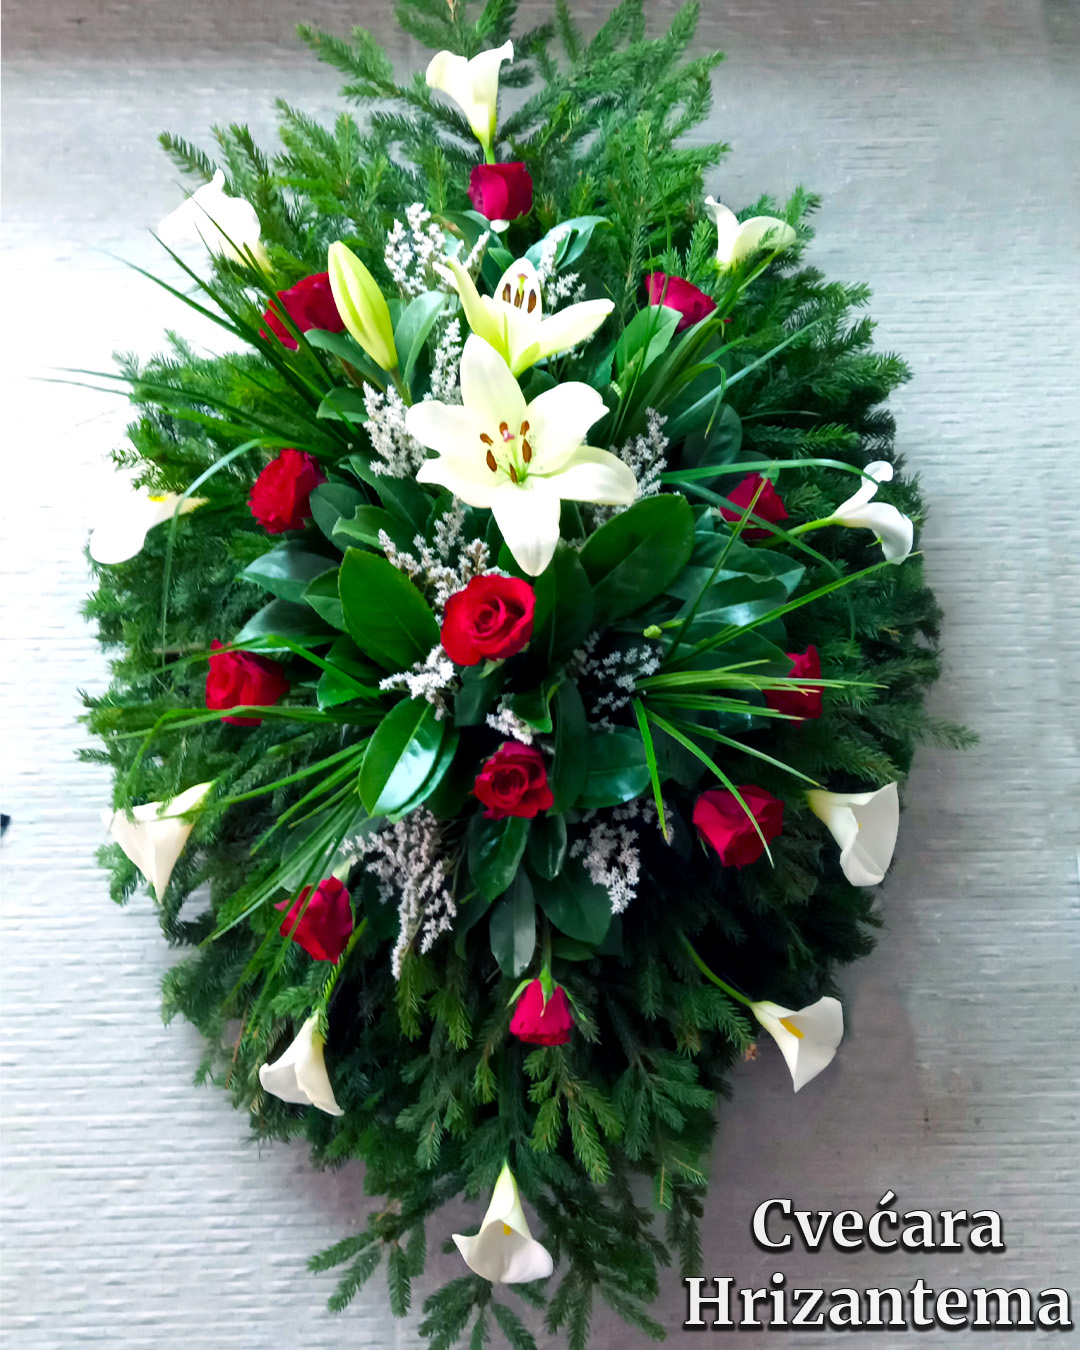 Prirodni venac crvene ruze beli ljiljan bele kale groblje orlovaca